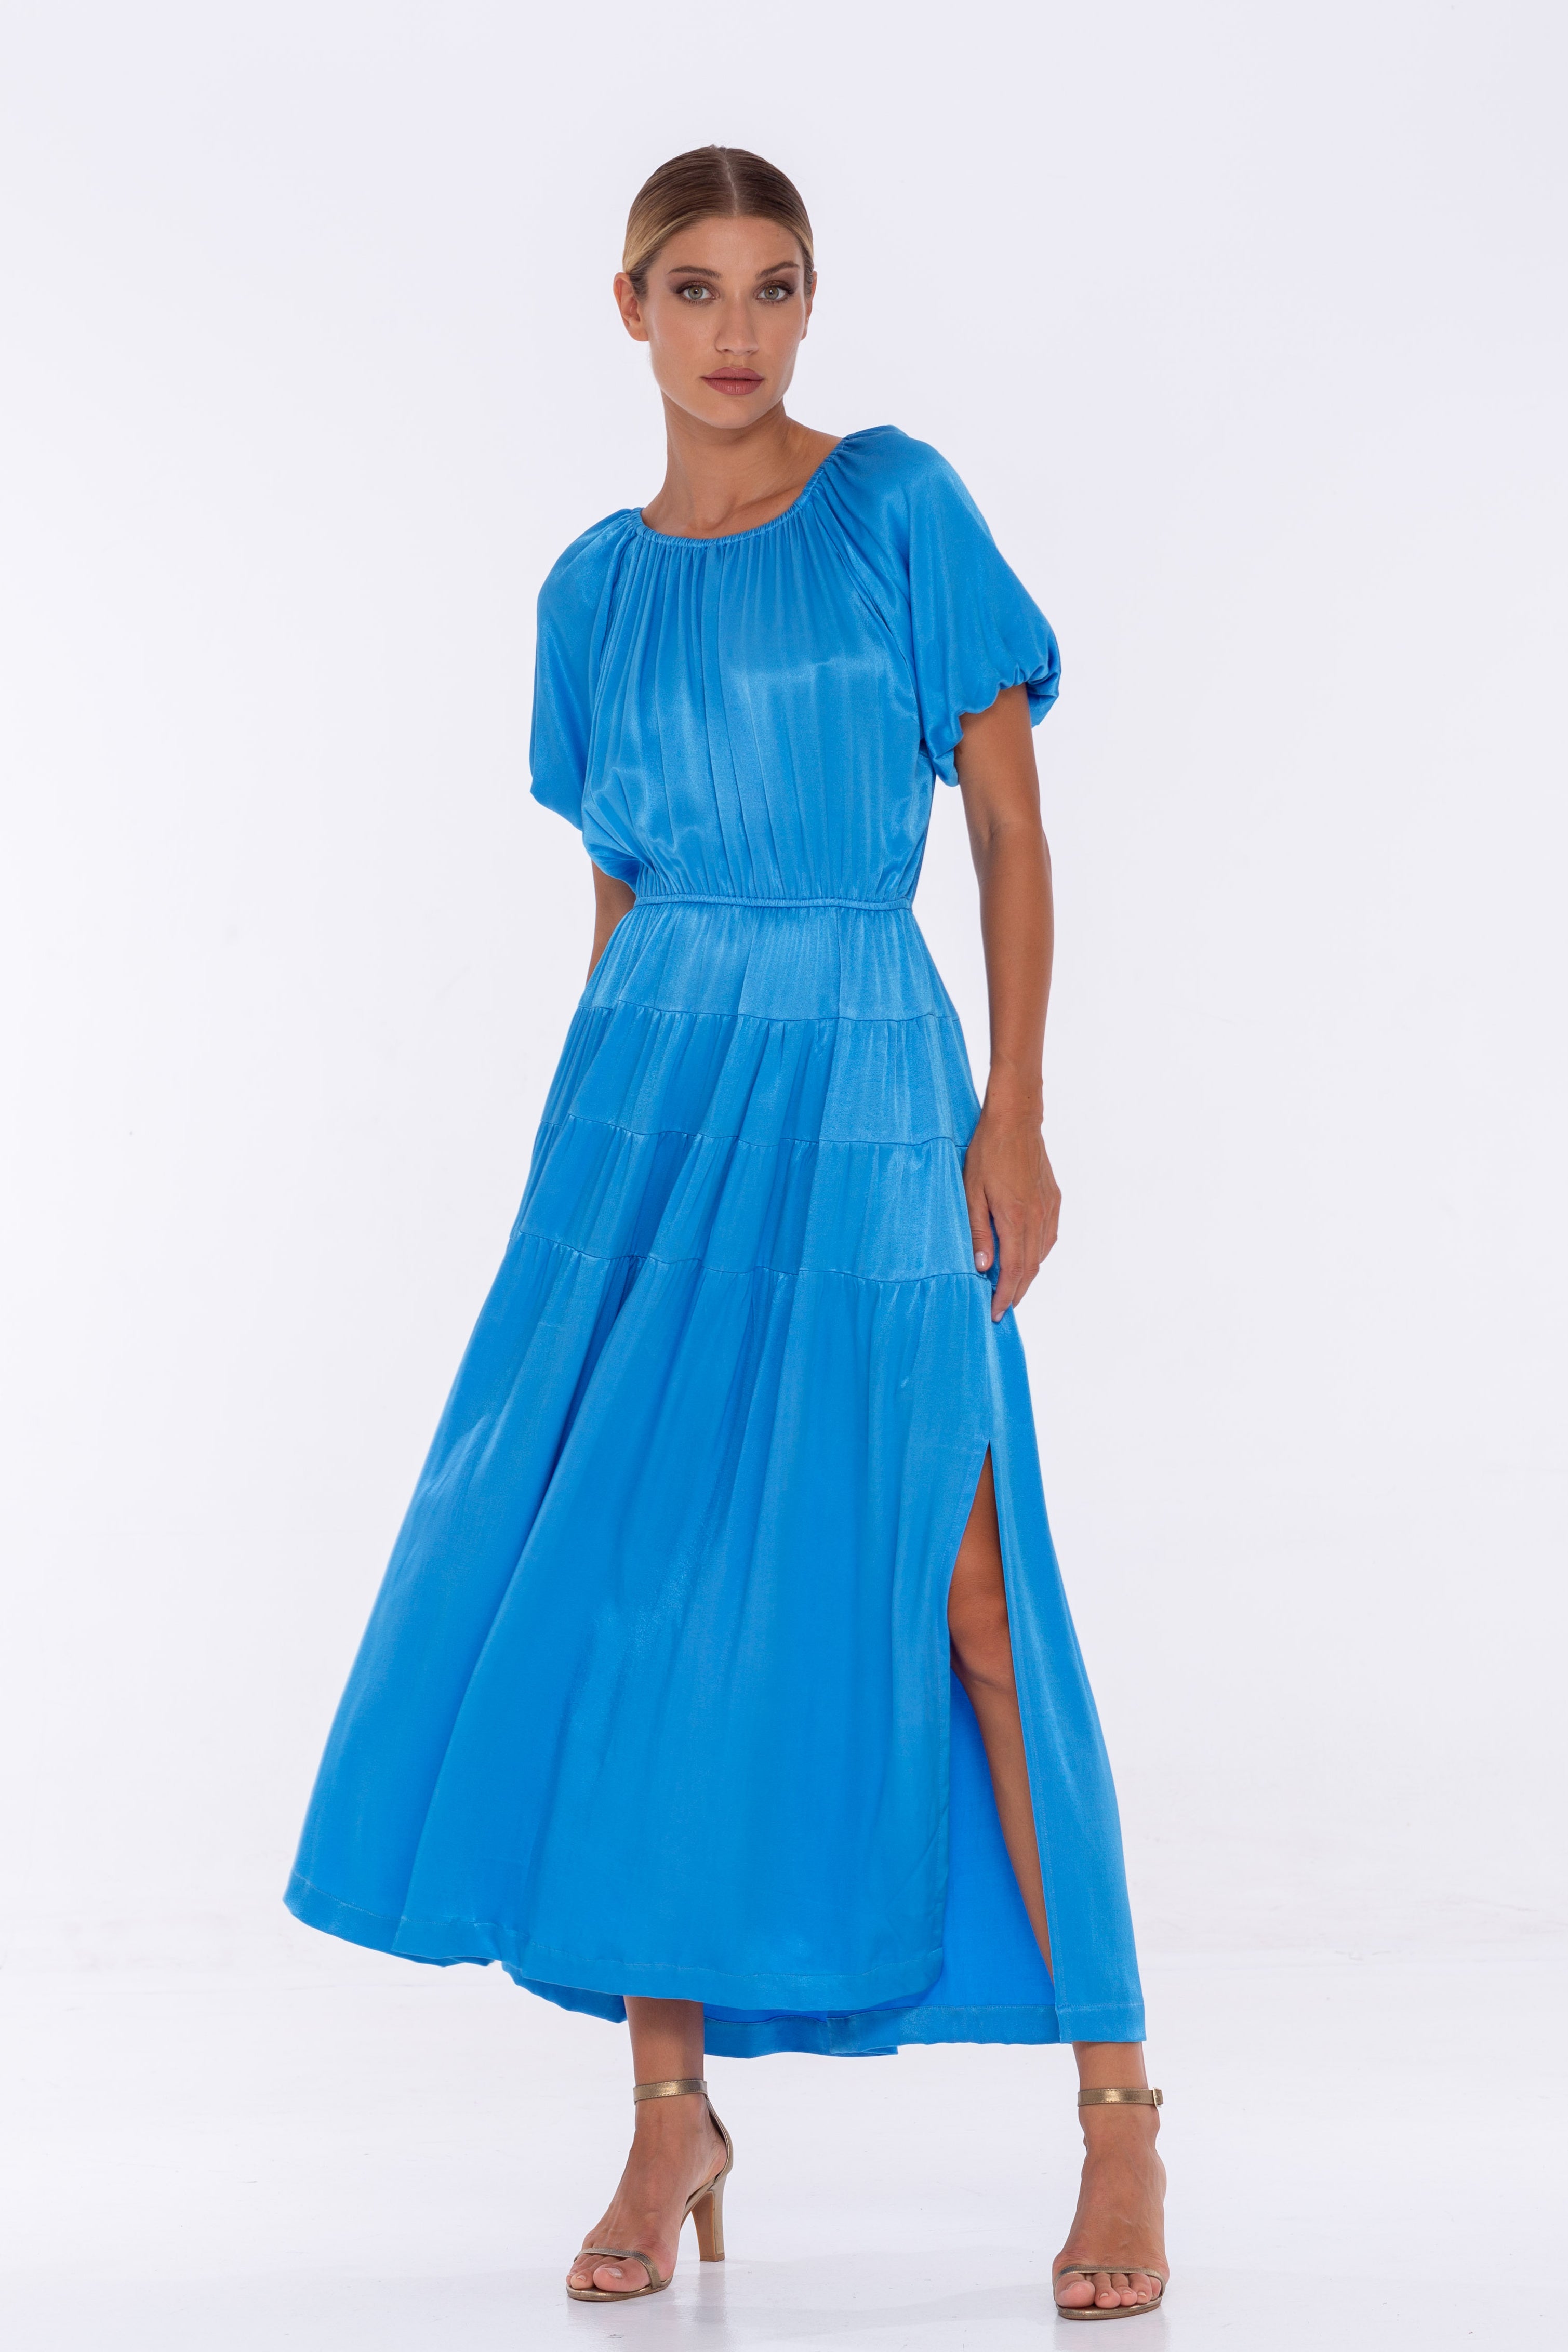 Coco Dress - Miami Blue